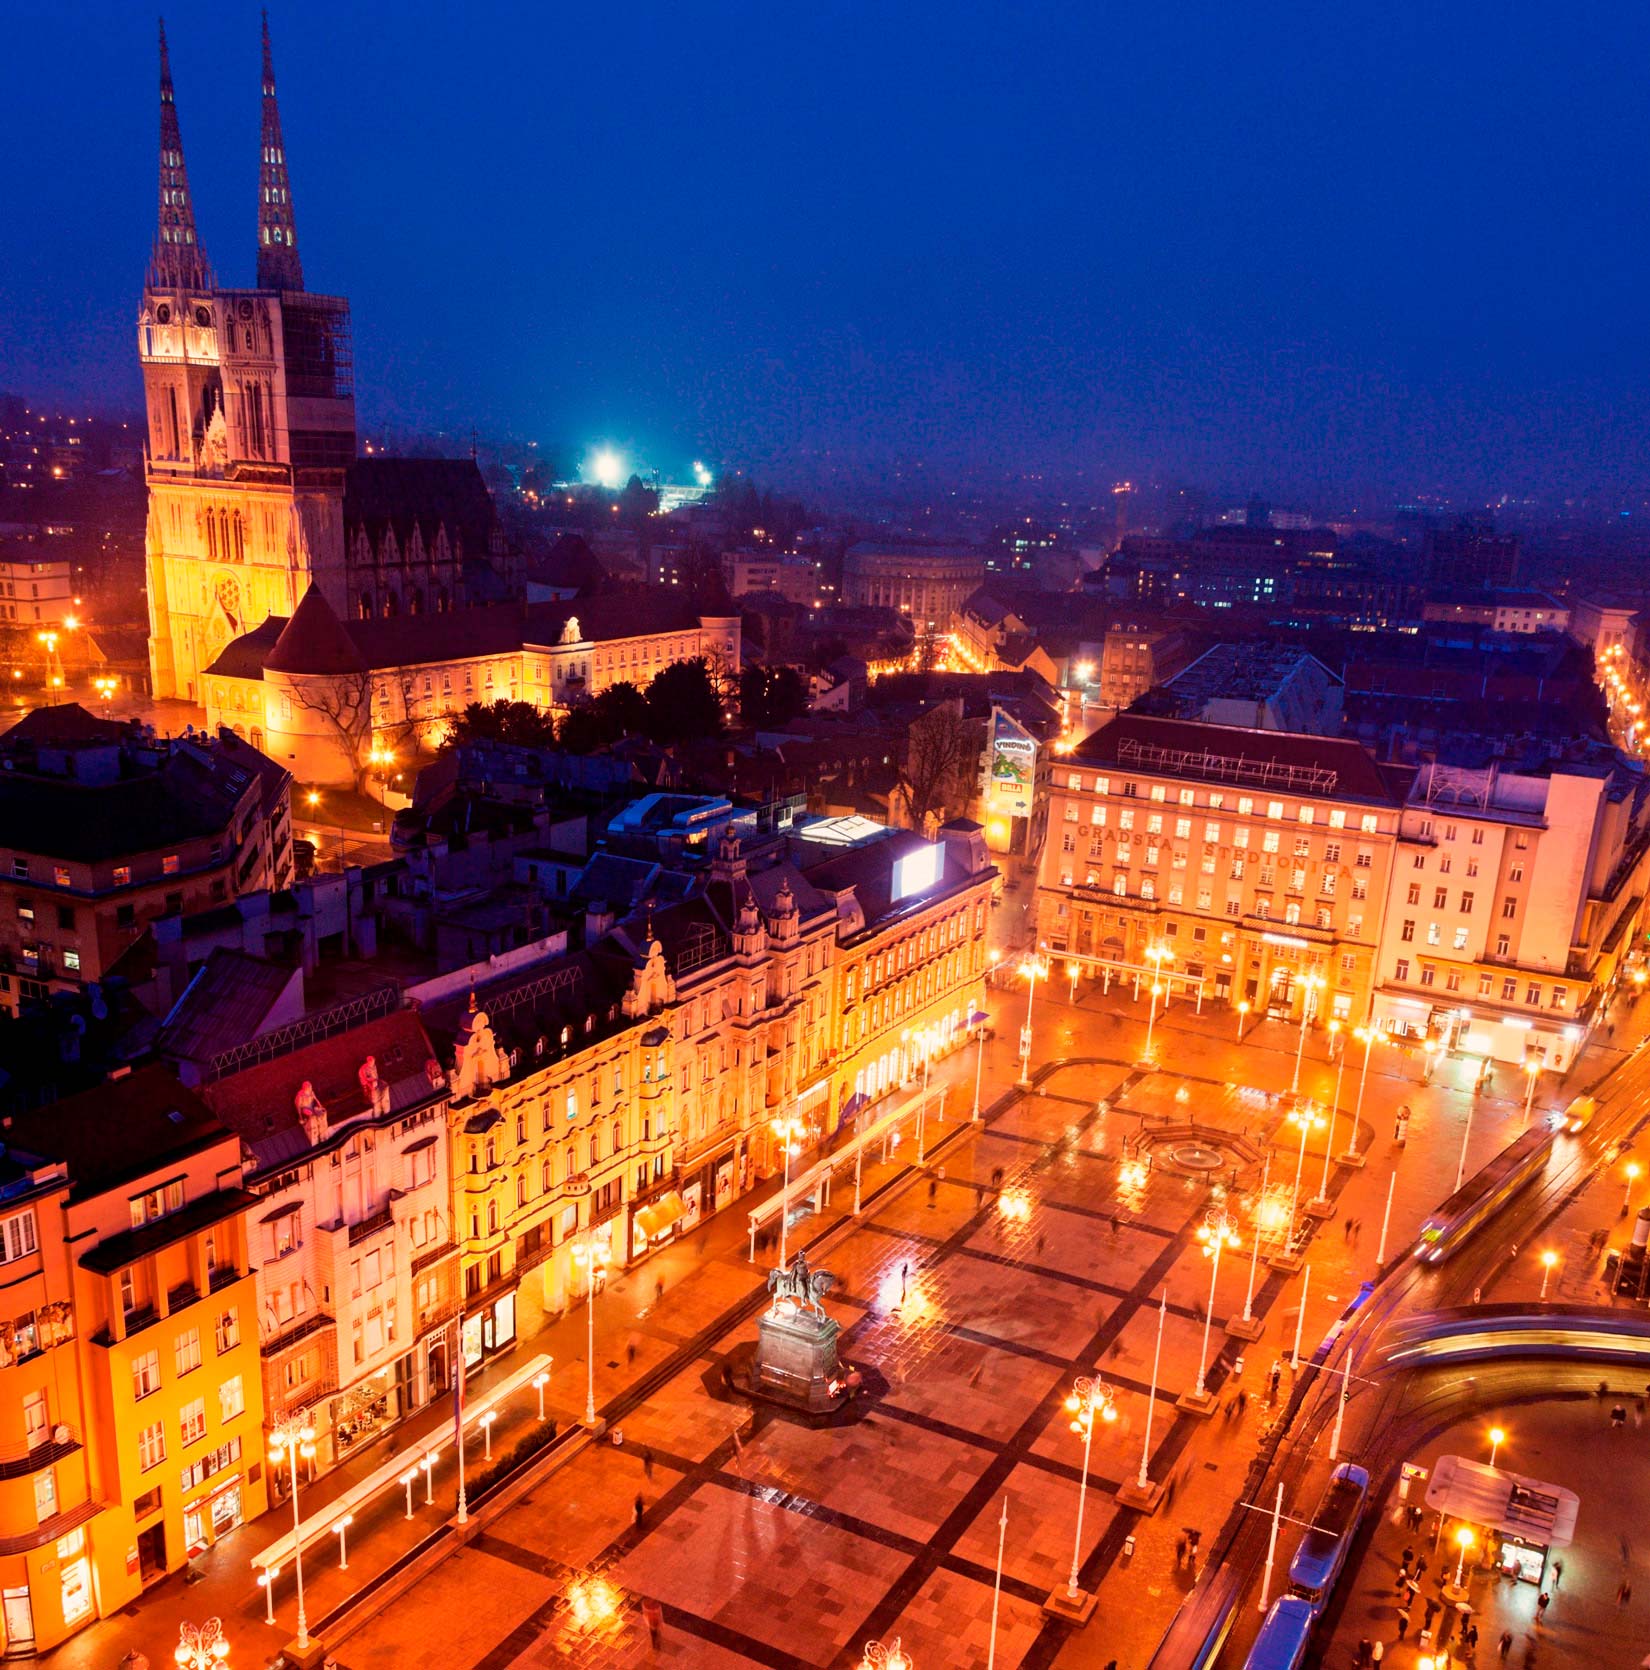 Fotografija prikazuje pogled iz zraka na Trg bana Josipa Jelačića u Zagrebu. Trg je obasjan noćnom rasvjetom.